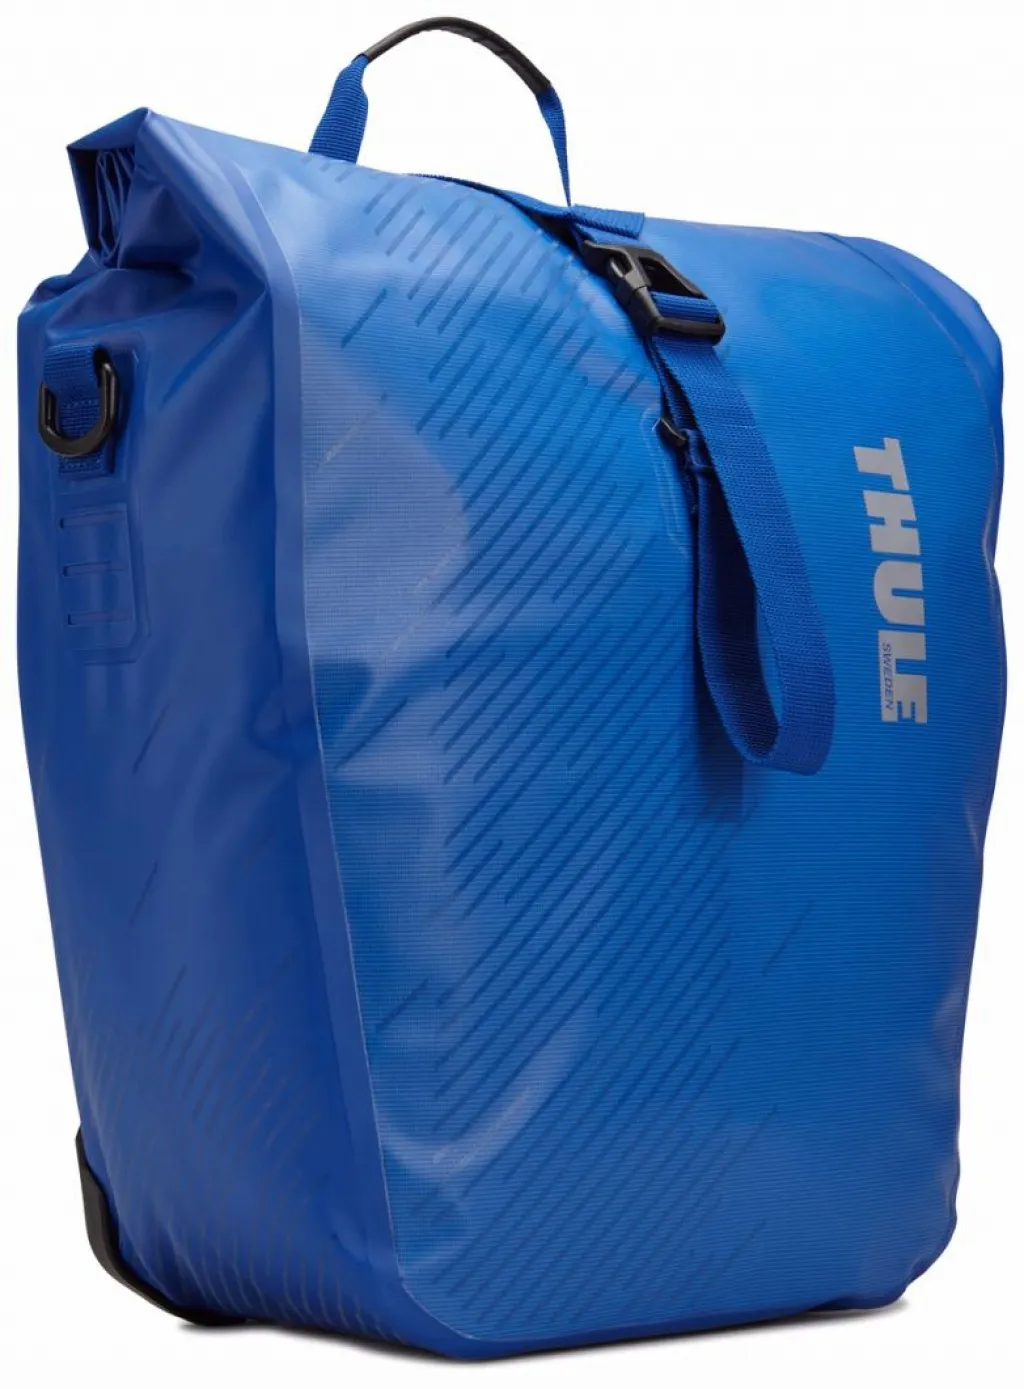 Велосипедная сумка Thule Shield Pannier Large (pair) Cobalt